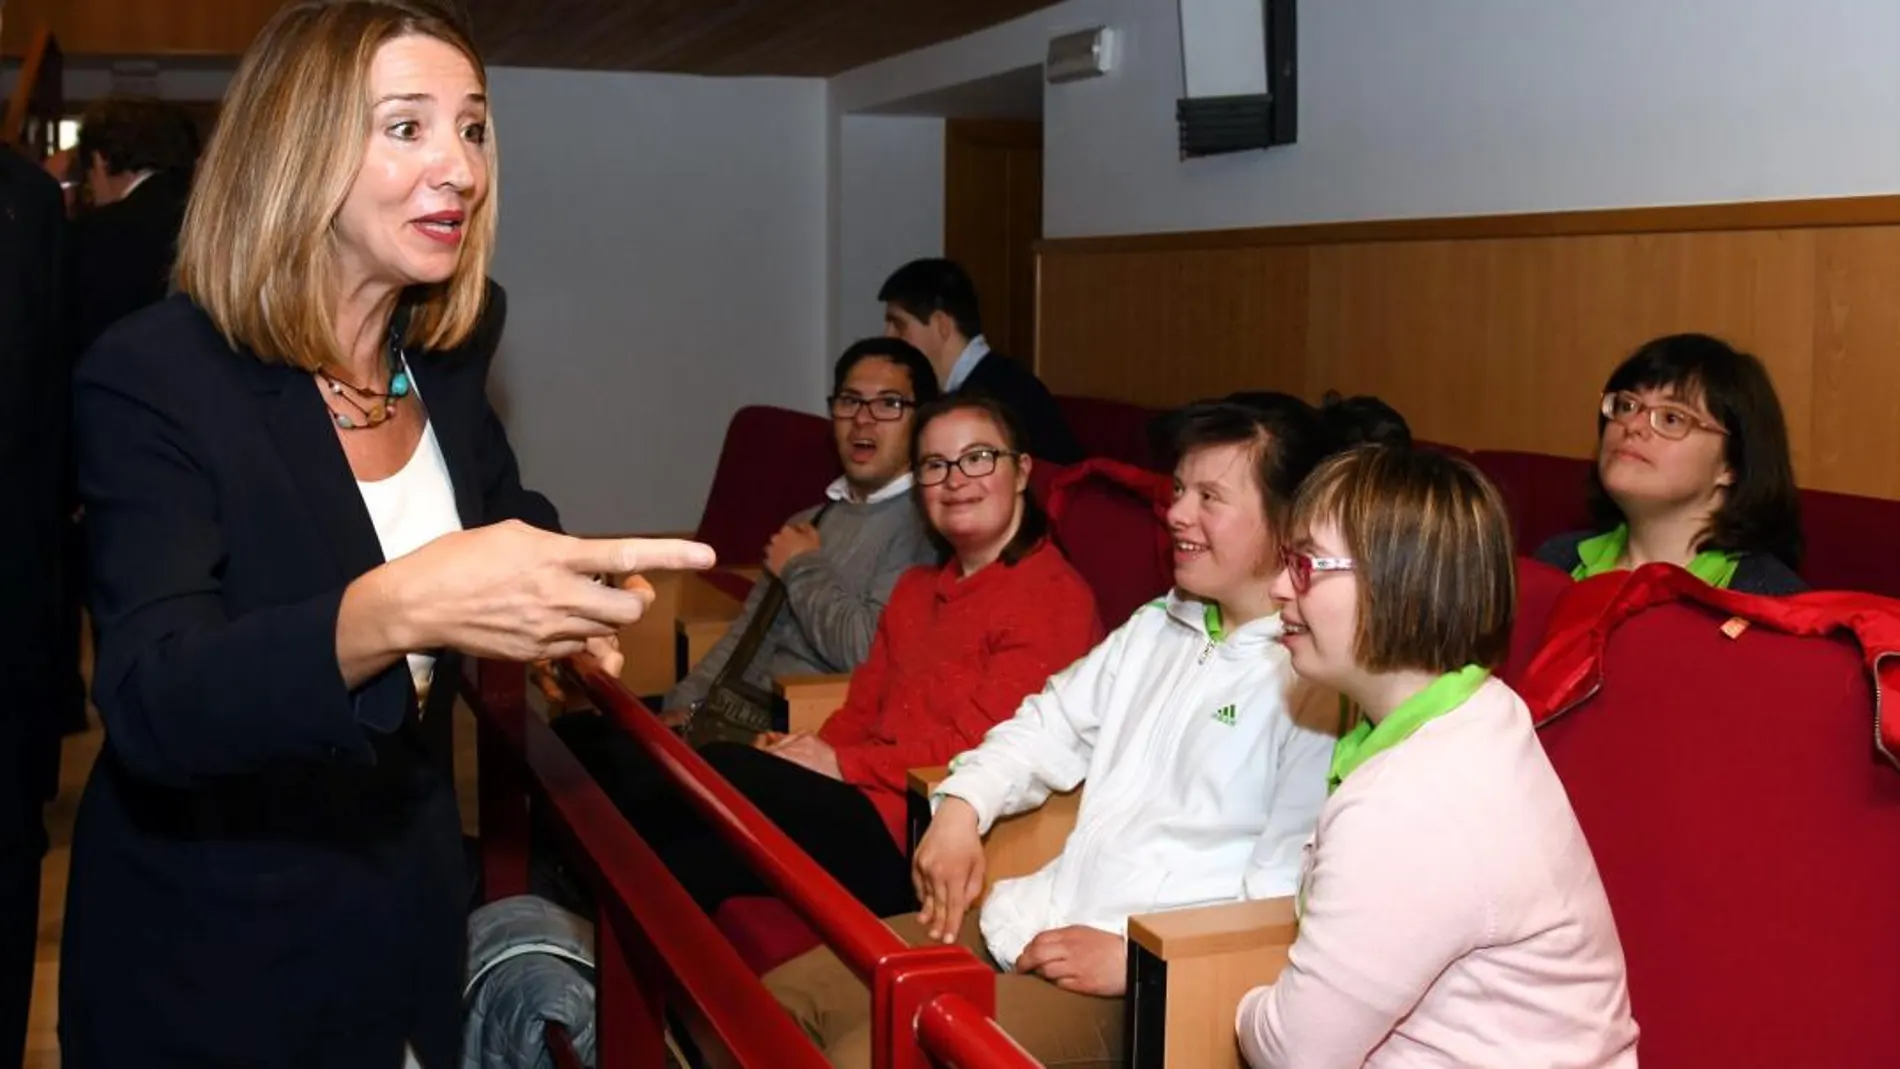 La consejera de Familia, Alicia García, saluda a varios chicos con Sindrome de Down que asisten en Burgos al Congreso de Empleo con Apoyo